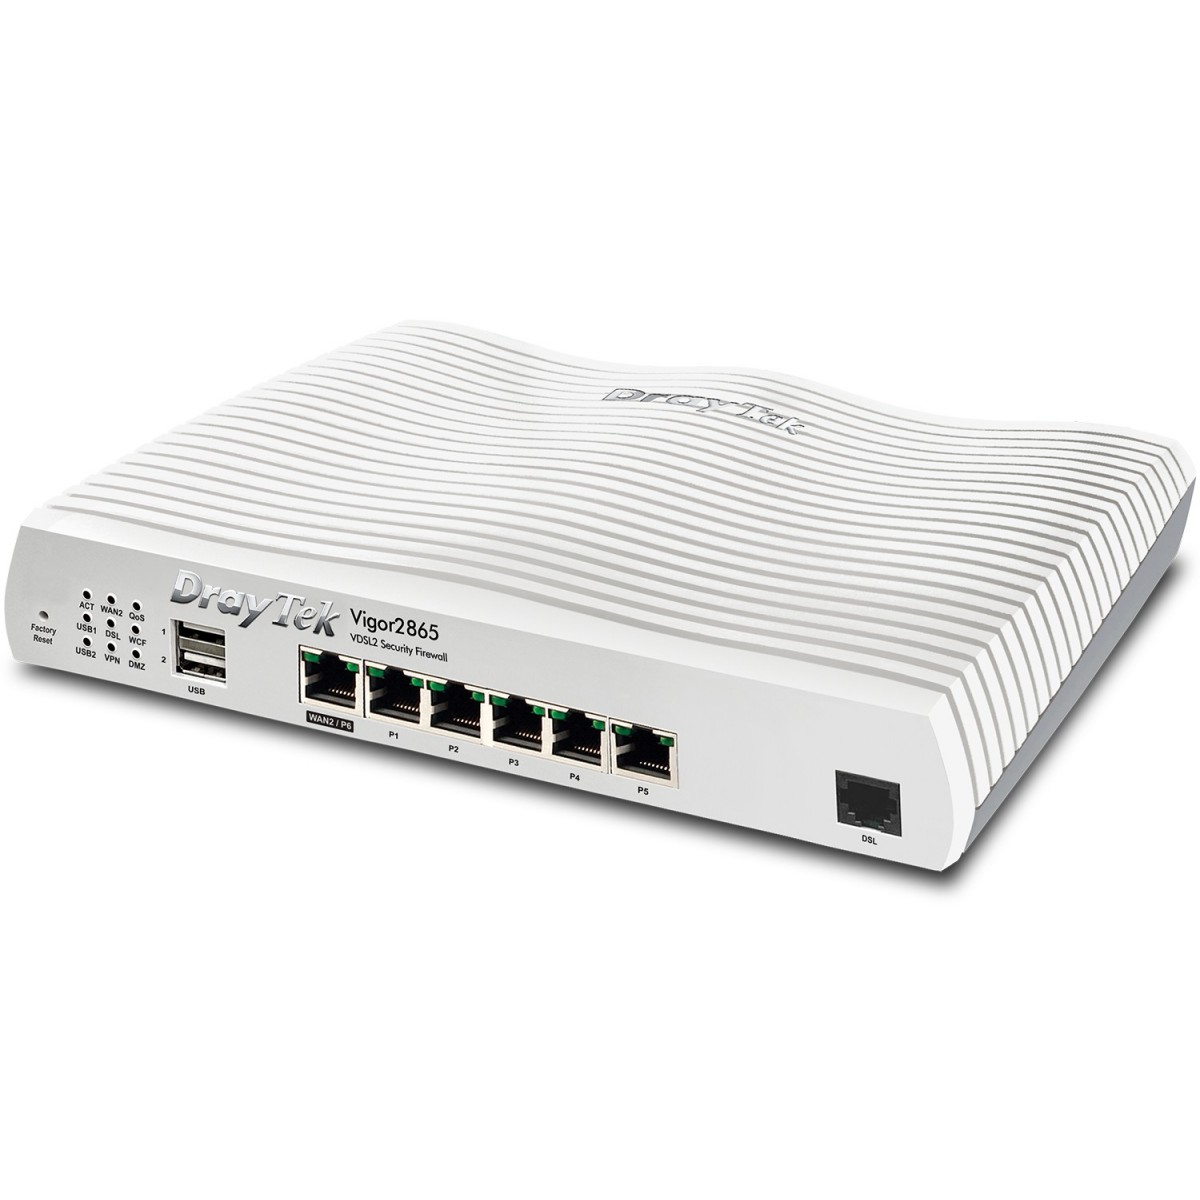 Draytek Vigor 2865-B ADSL2+-VDSL2 Supervectoring Router retail - Modem - 1,000 Mbps